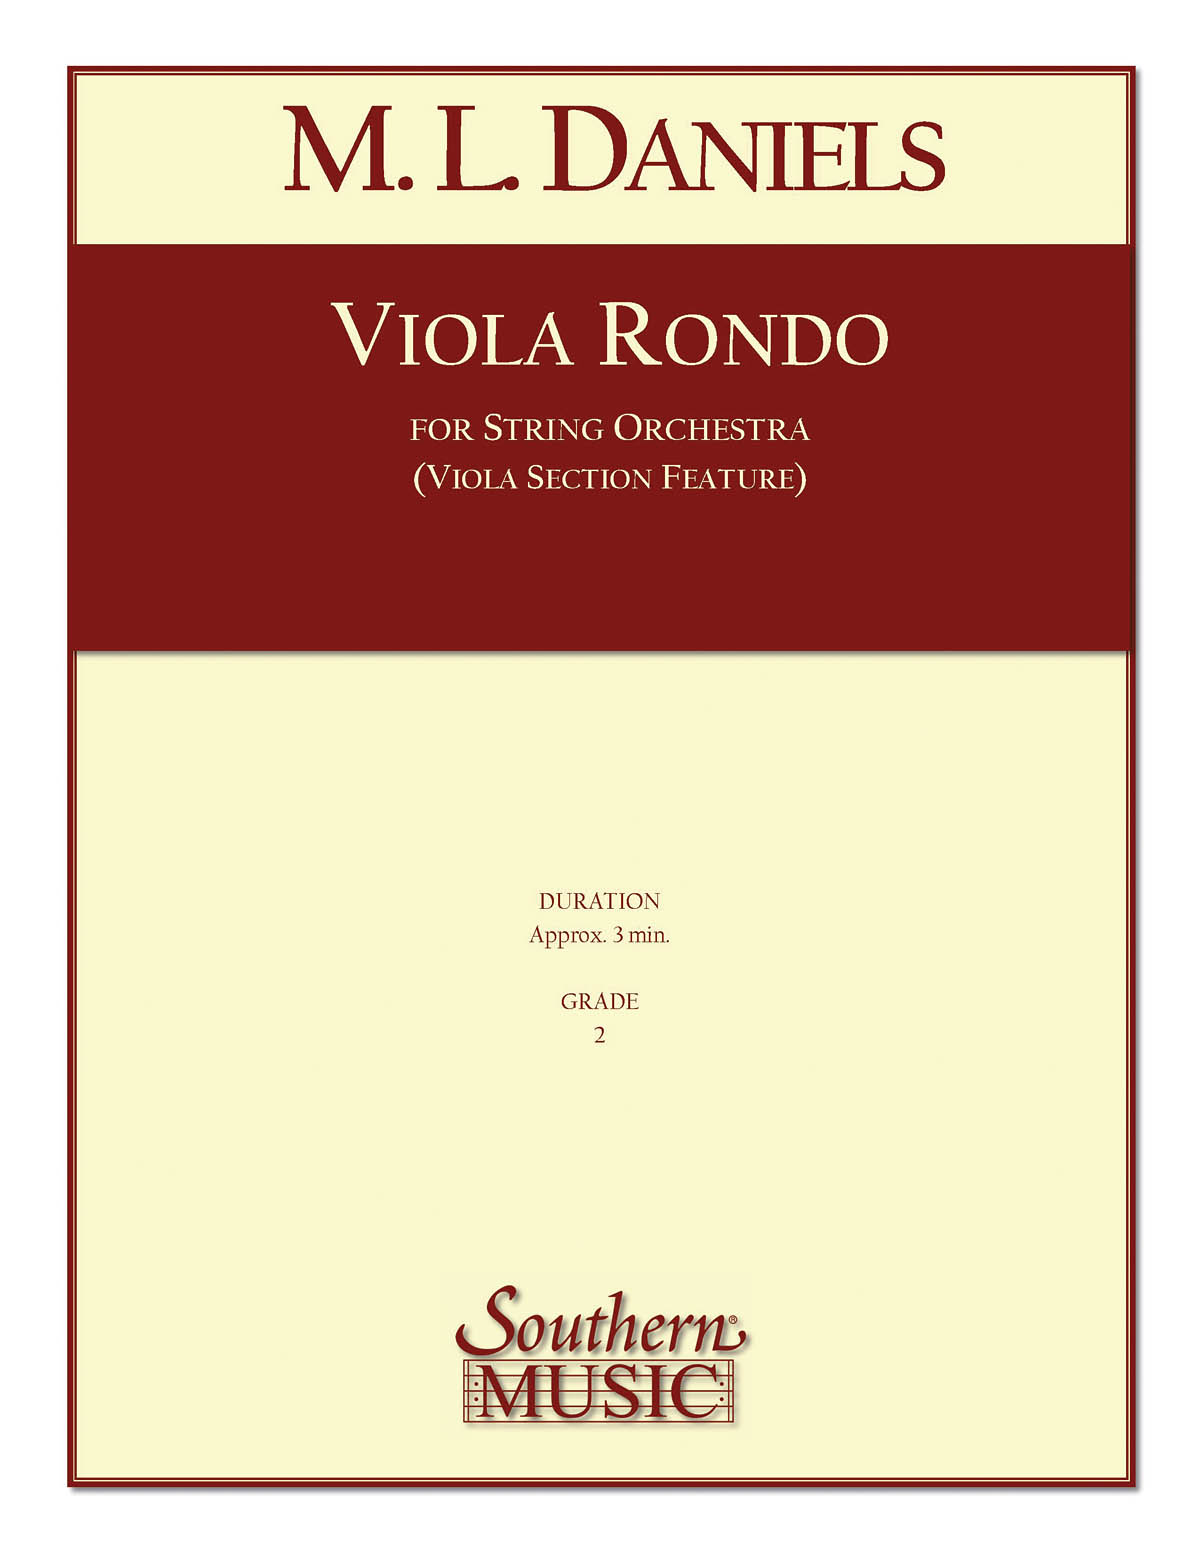 Viola Rondo